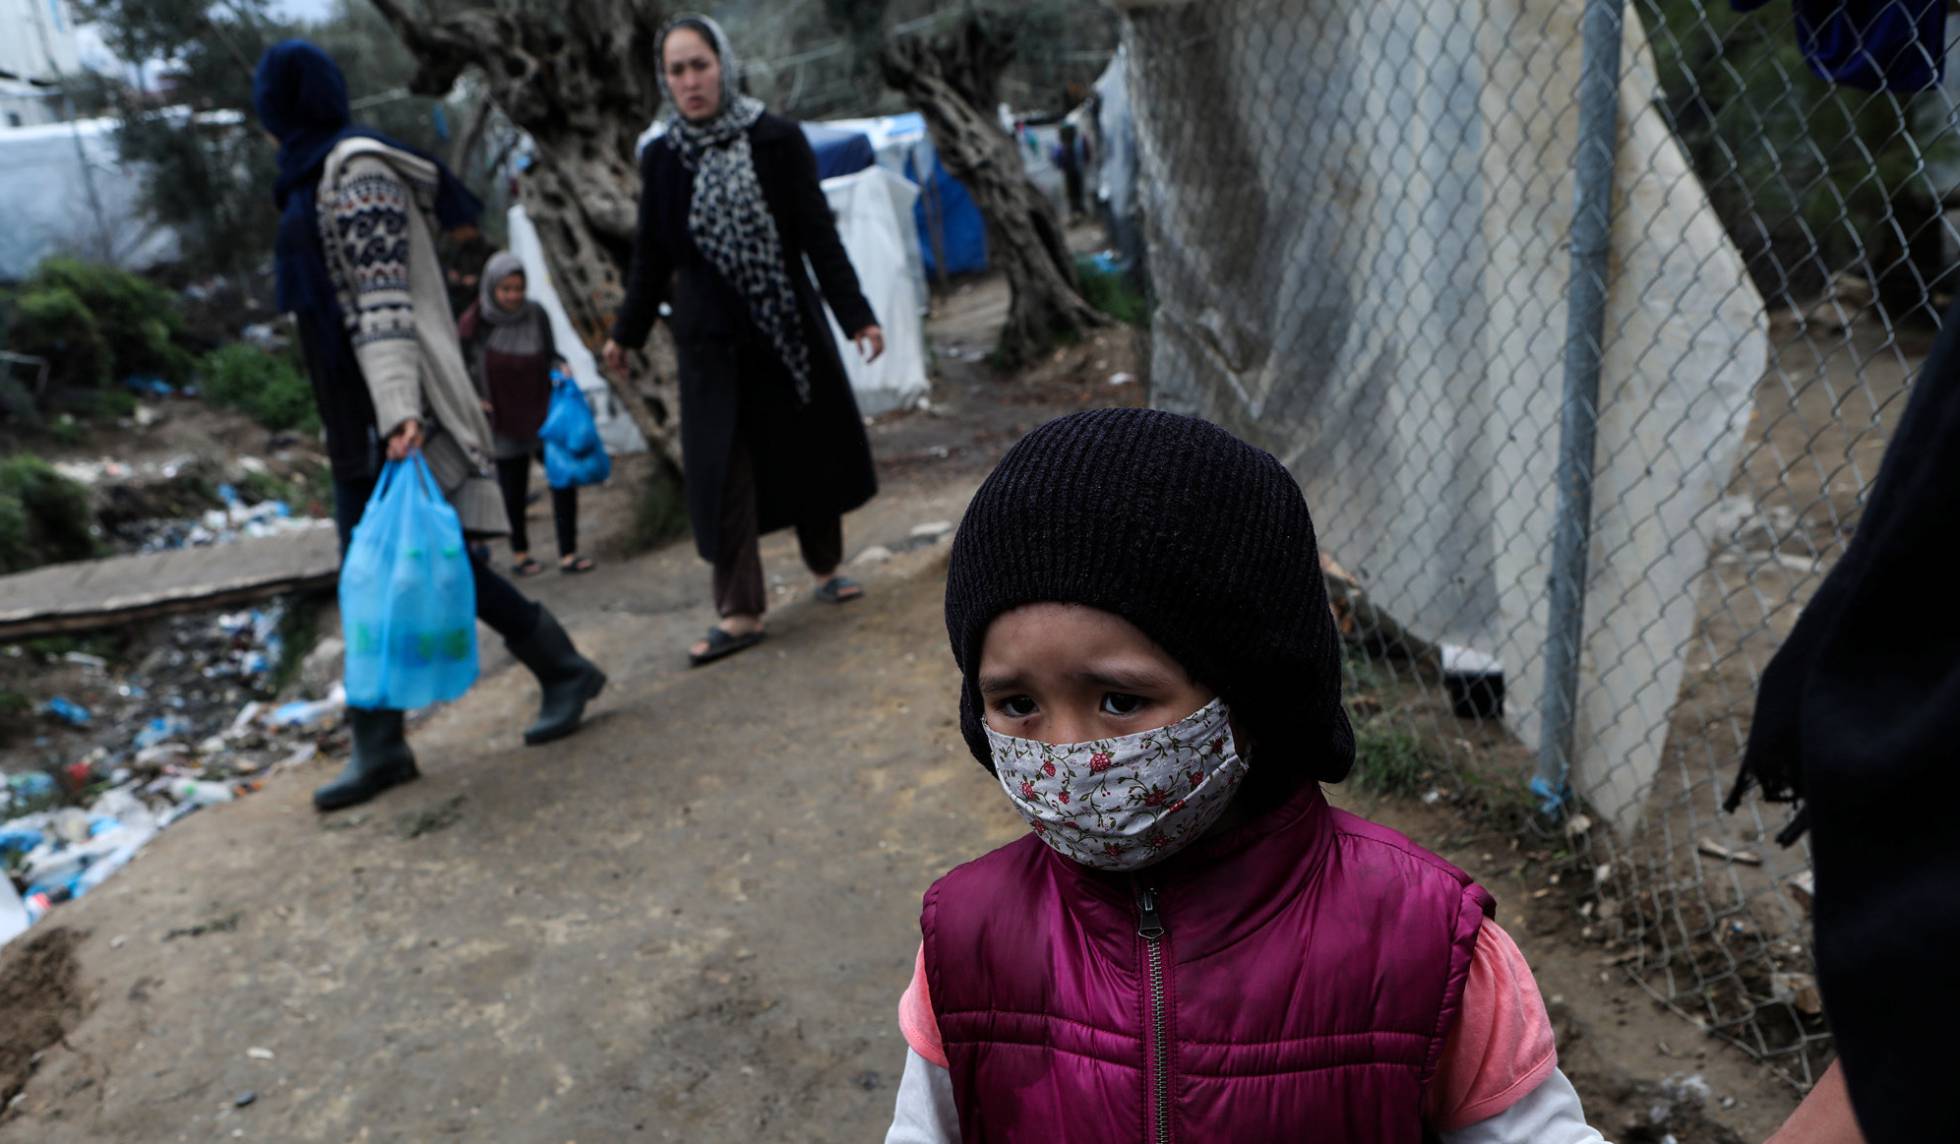  Una niña con mascarilla para protegerse de la Covid-19 en el campo de refugiados de Moria, en Grecia, el 2 de abril de 2020. Elias Marcou (REUTERS)